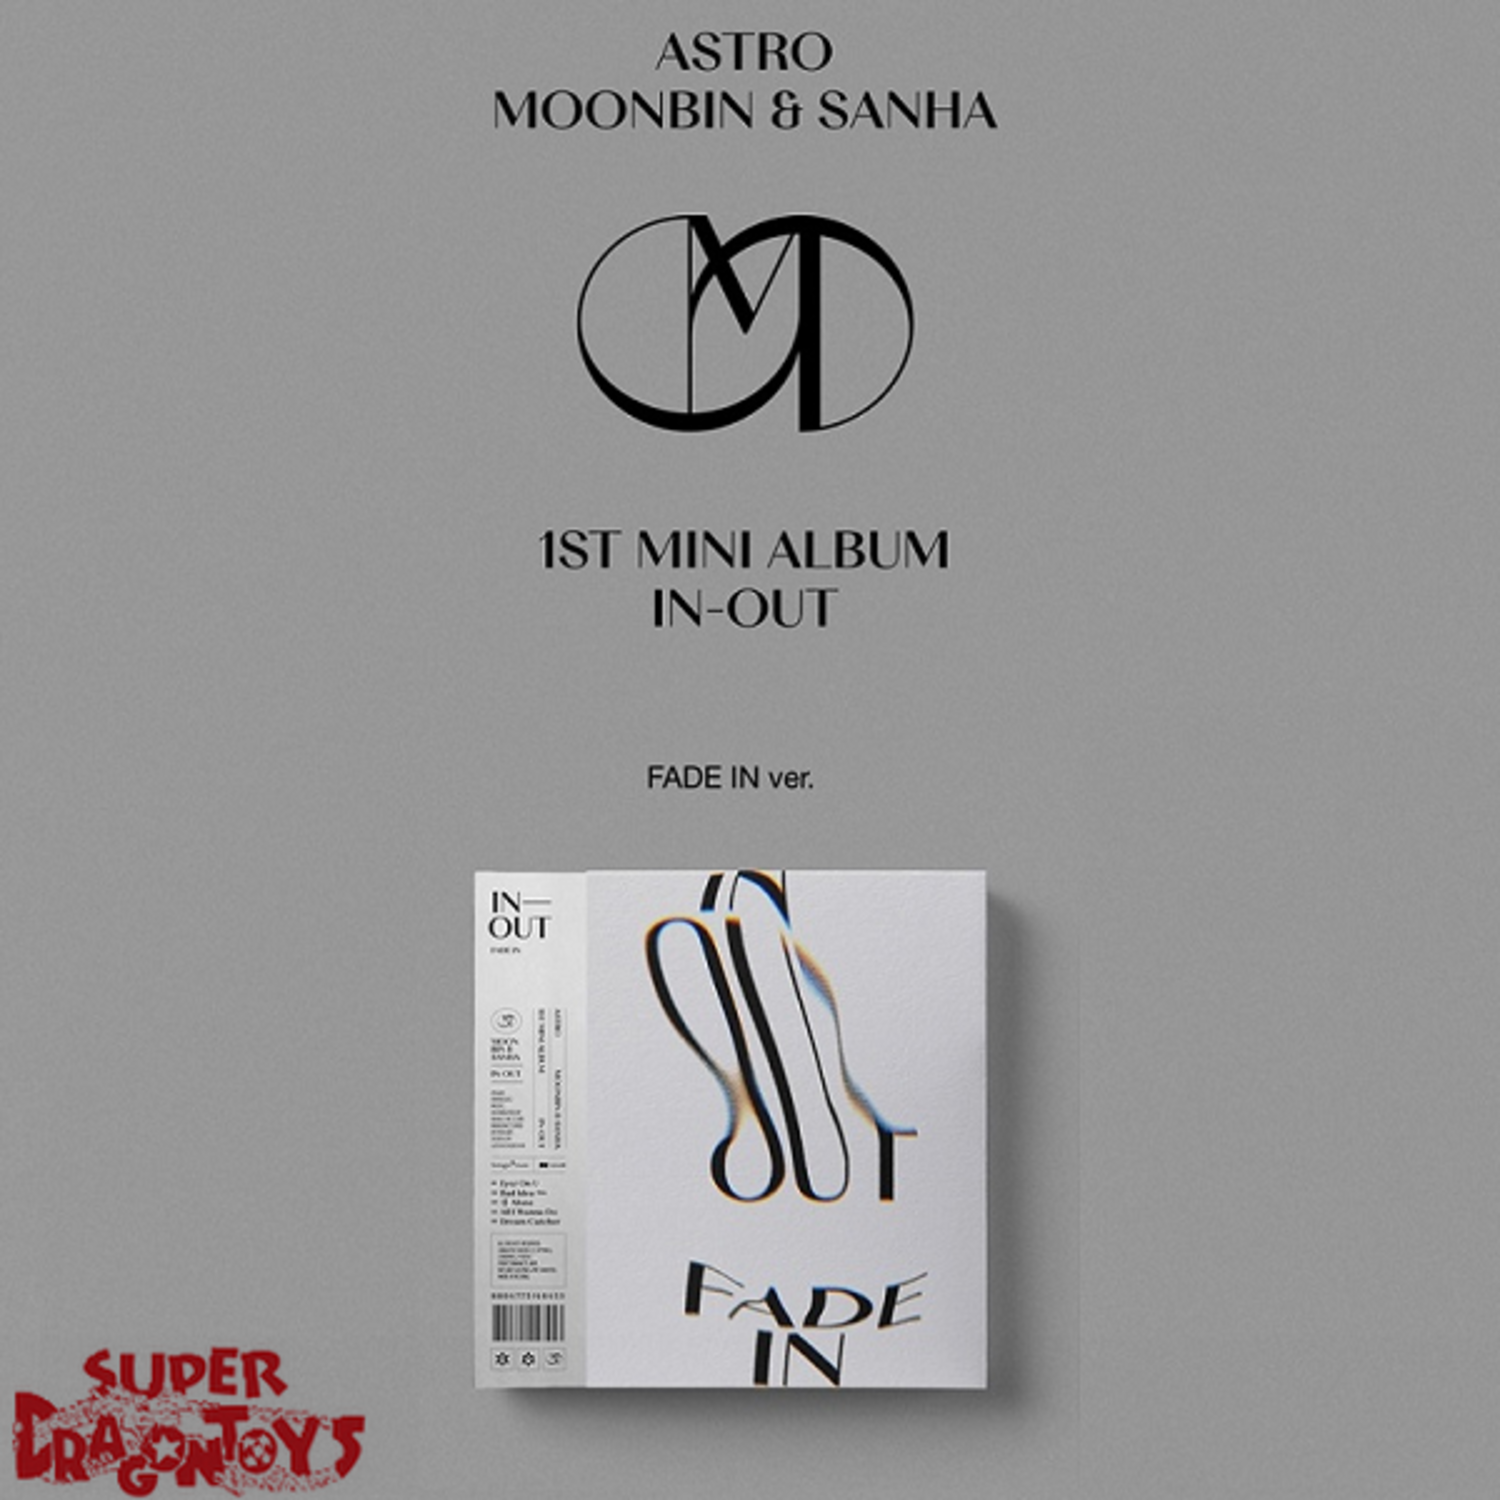 MOONBIN & SANHA / ASTRO (문빈&산하) - IN-OUT - 1ST MINI ALBUM 